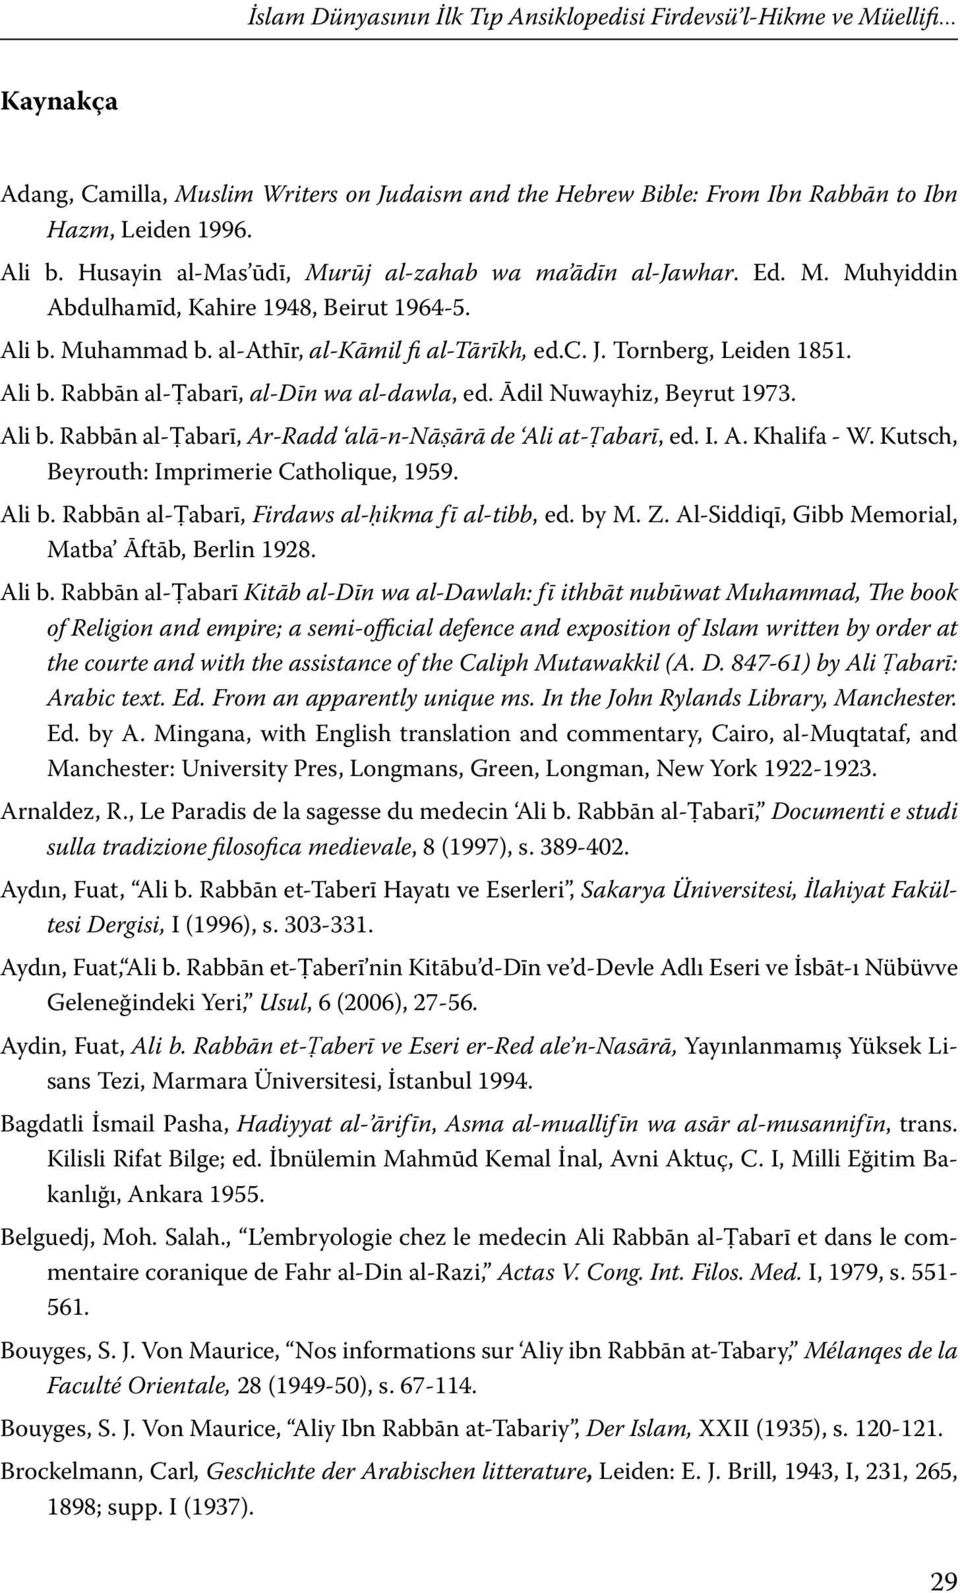 Ali b. Rabbān al-ṭabarī, al-dīn wa al-dawla, ed. Ādil Nuwayhiz, Beyrut 1973. Ali b. Rabbān al-ṭabarī, Ar-Radd alā-n-nāṣārā de Ali at-ṭabarī, ed. I. A. Khalifa - W.